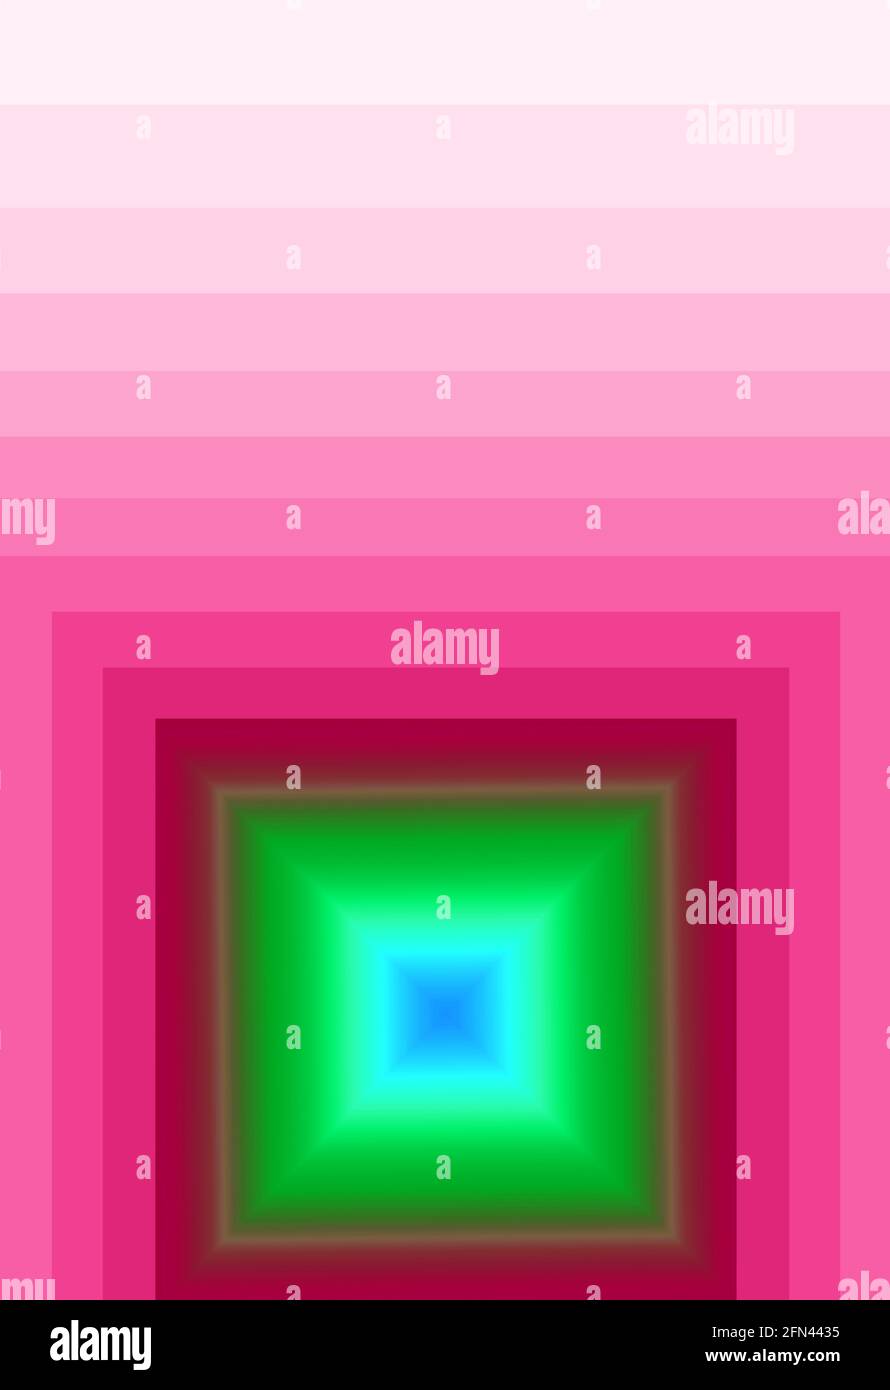 Lebendiges grünes 3D-Quadrat mit mehreren Schichten im Farbverlauf Magentarot Rahmen Stockfoto